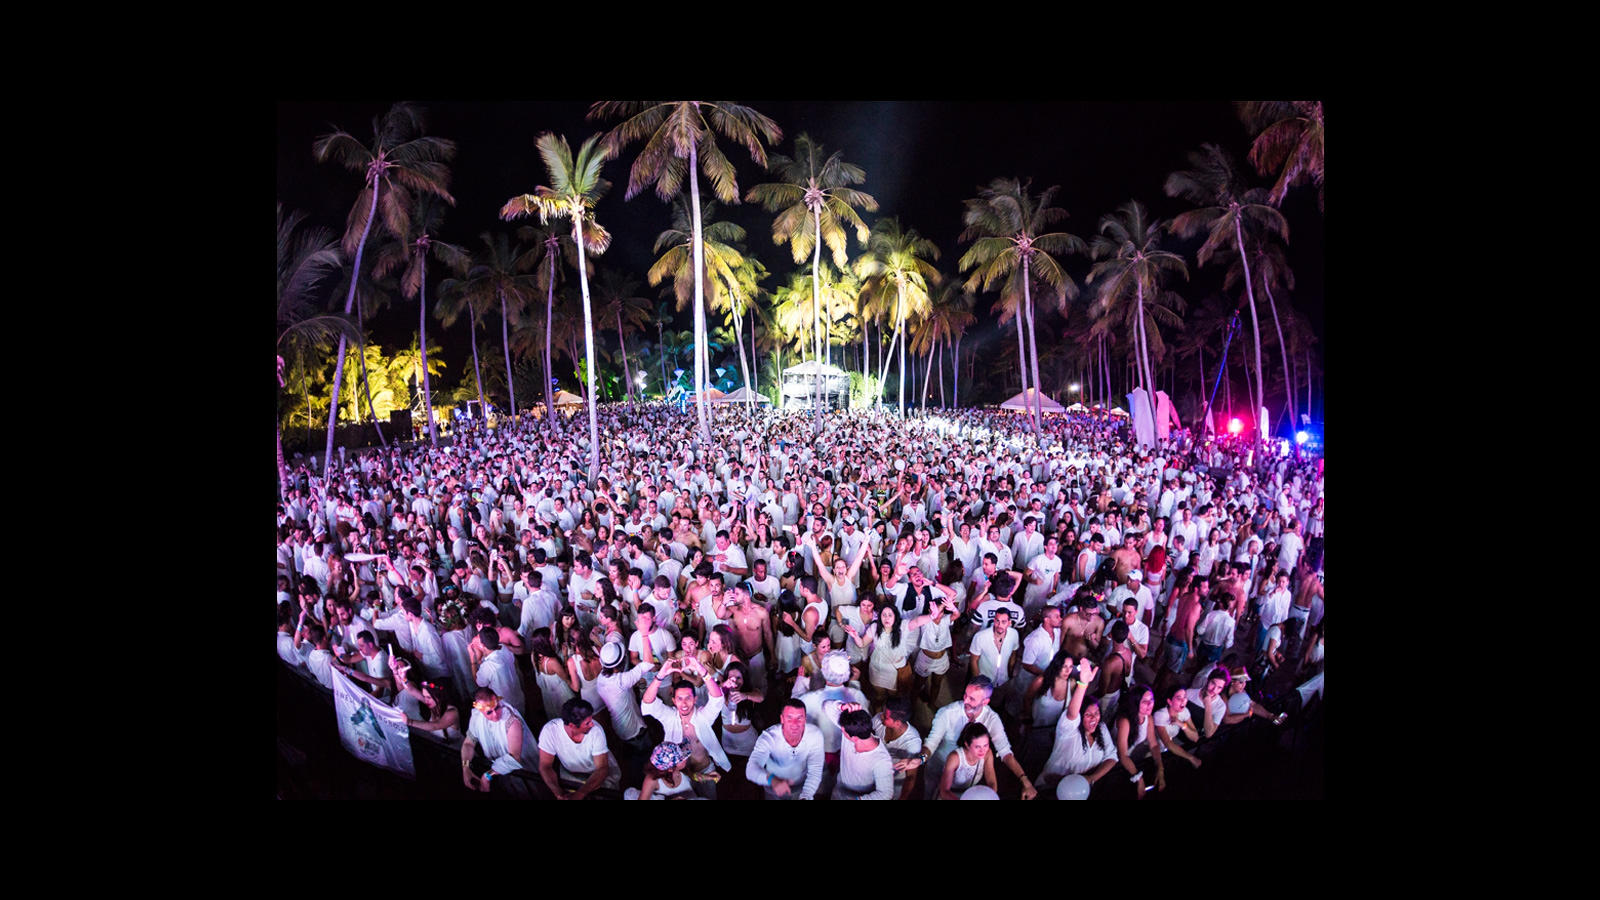 La mayor fiesta del Caribe acaba de finalizar en República Dominicana con la celebración de la octava edición de Ron Barceló Desalia. La playa Cabeza de Toro ha sido el escenario en el que más de 5.000 personas vestidas de blanco han disfrutado de esta octava edición con los mejores DJ’s de la escena nacional e internacional